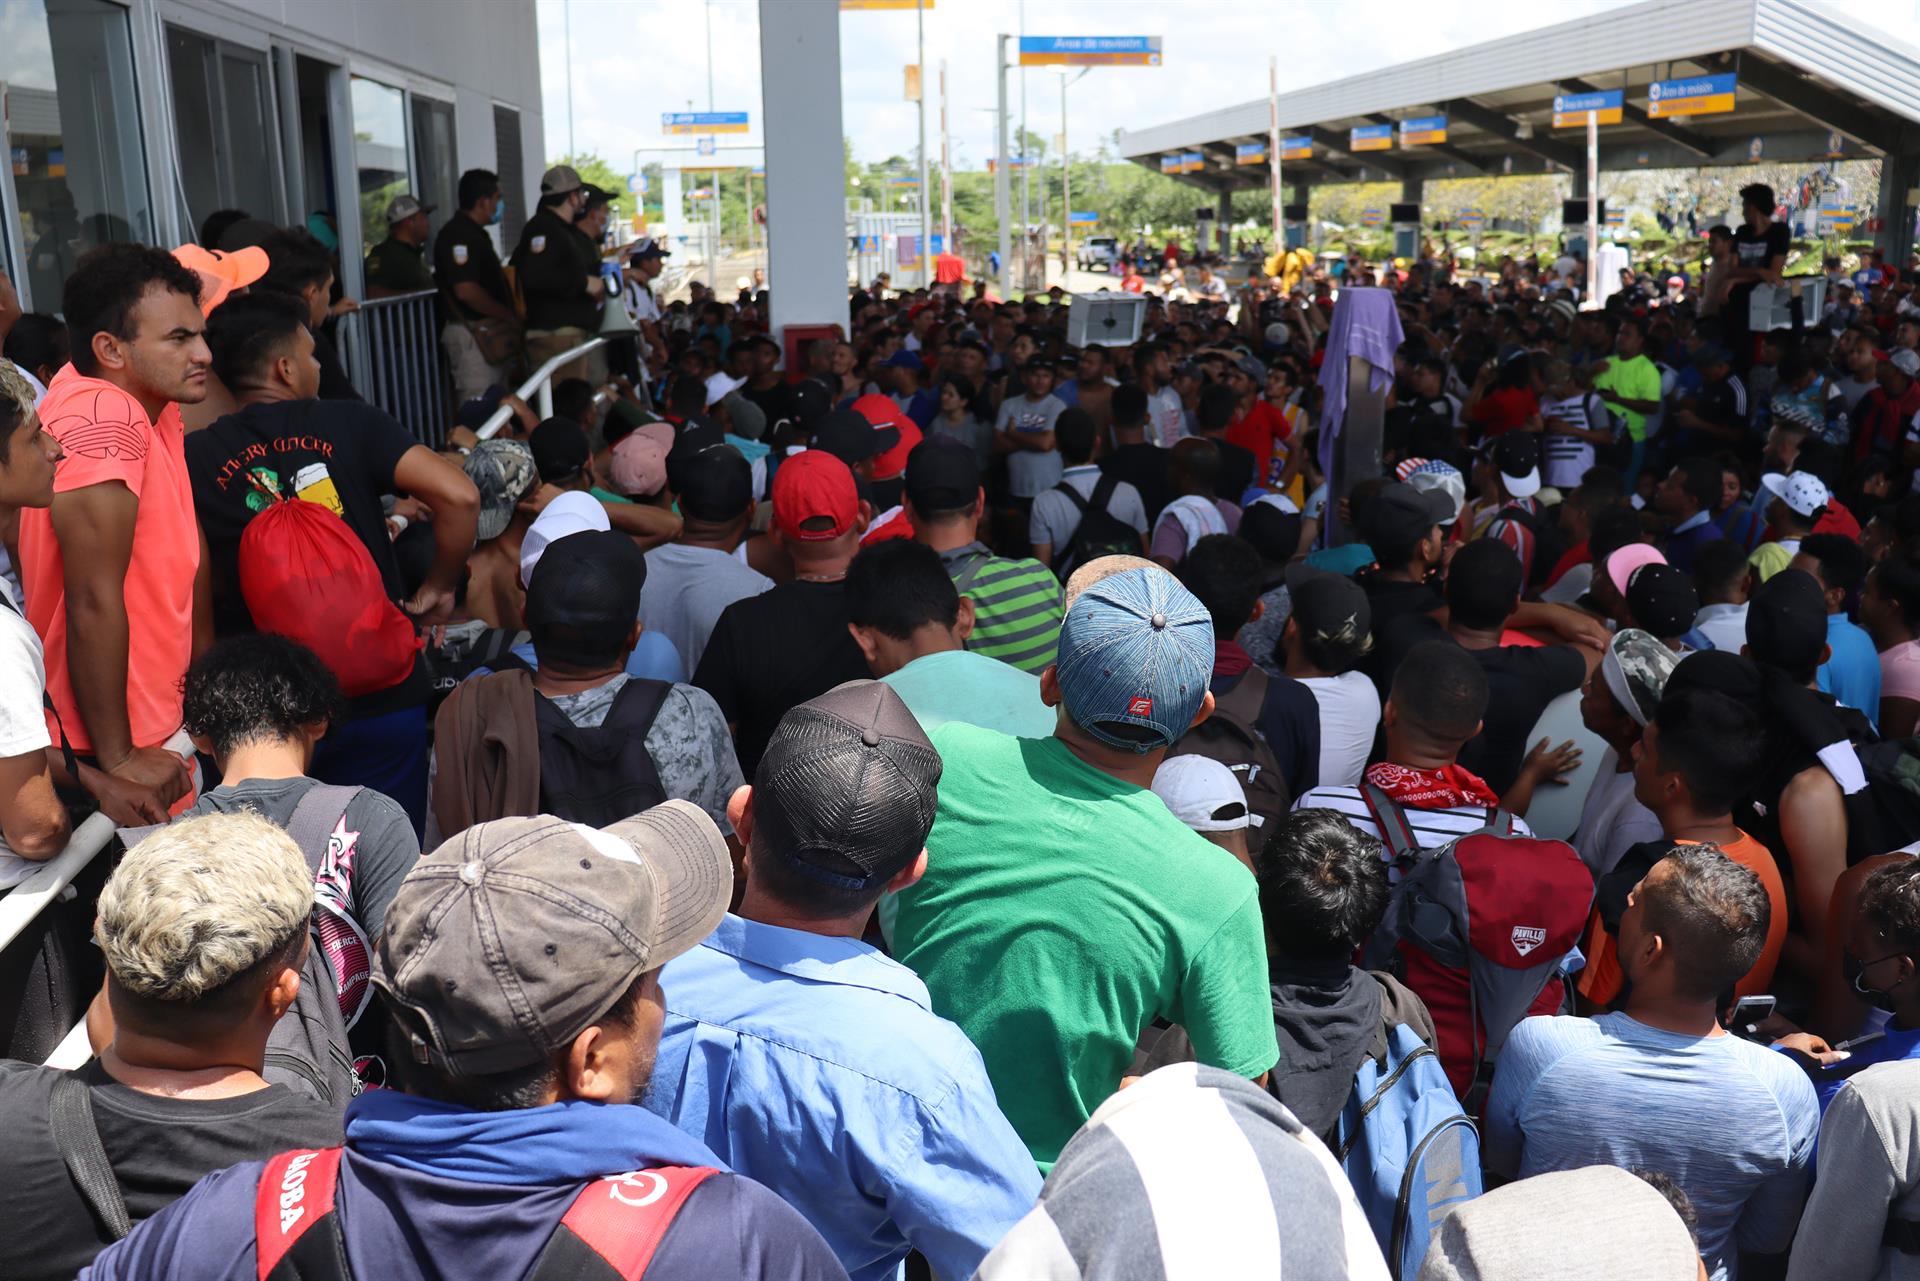 Caravana de migrantes parte del sur de México con temor tras tragedia en Texas